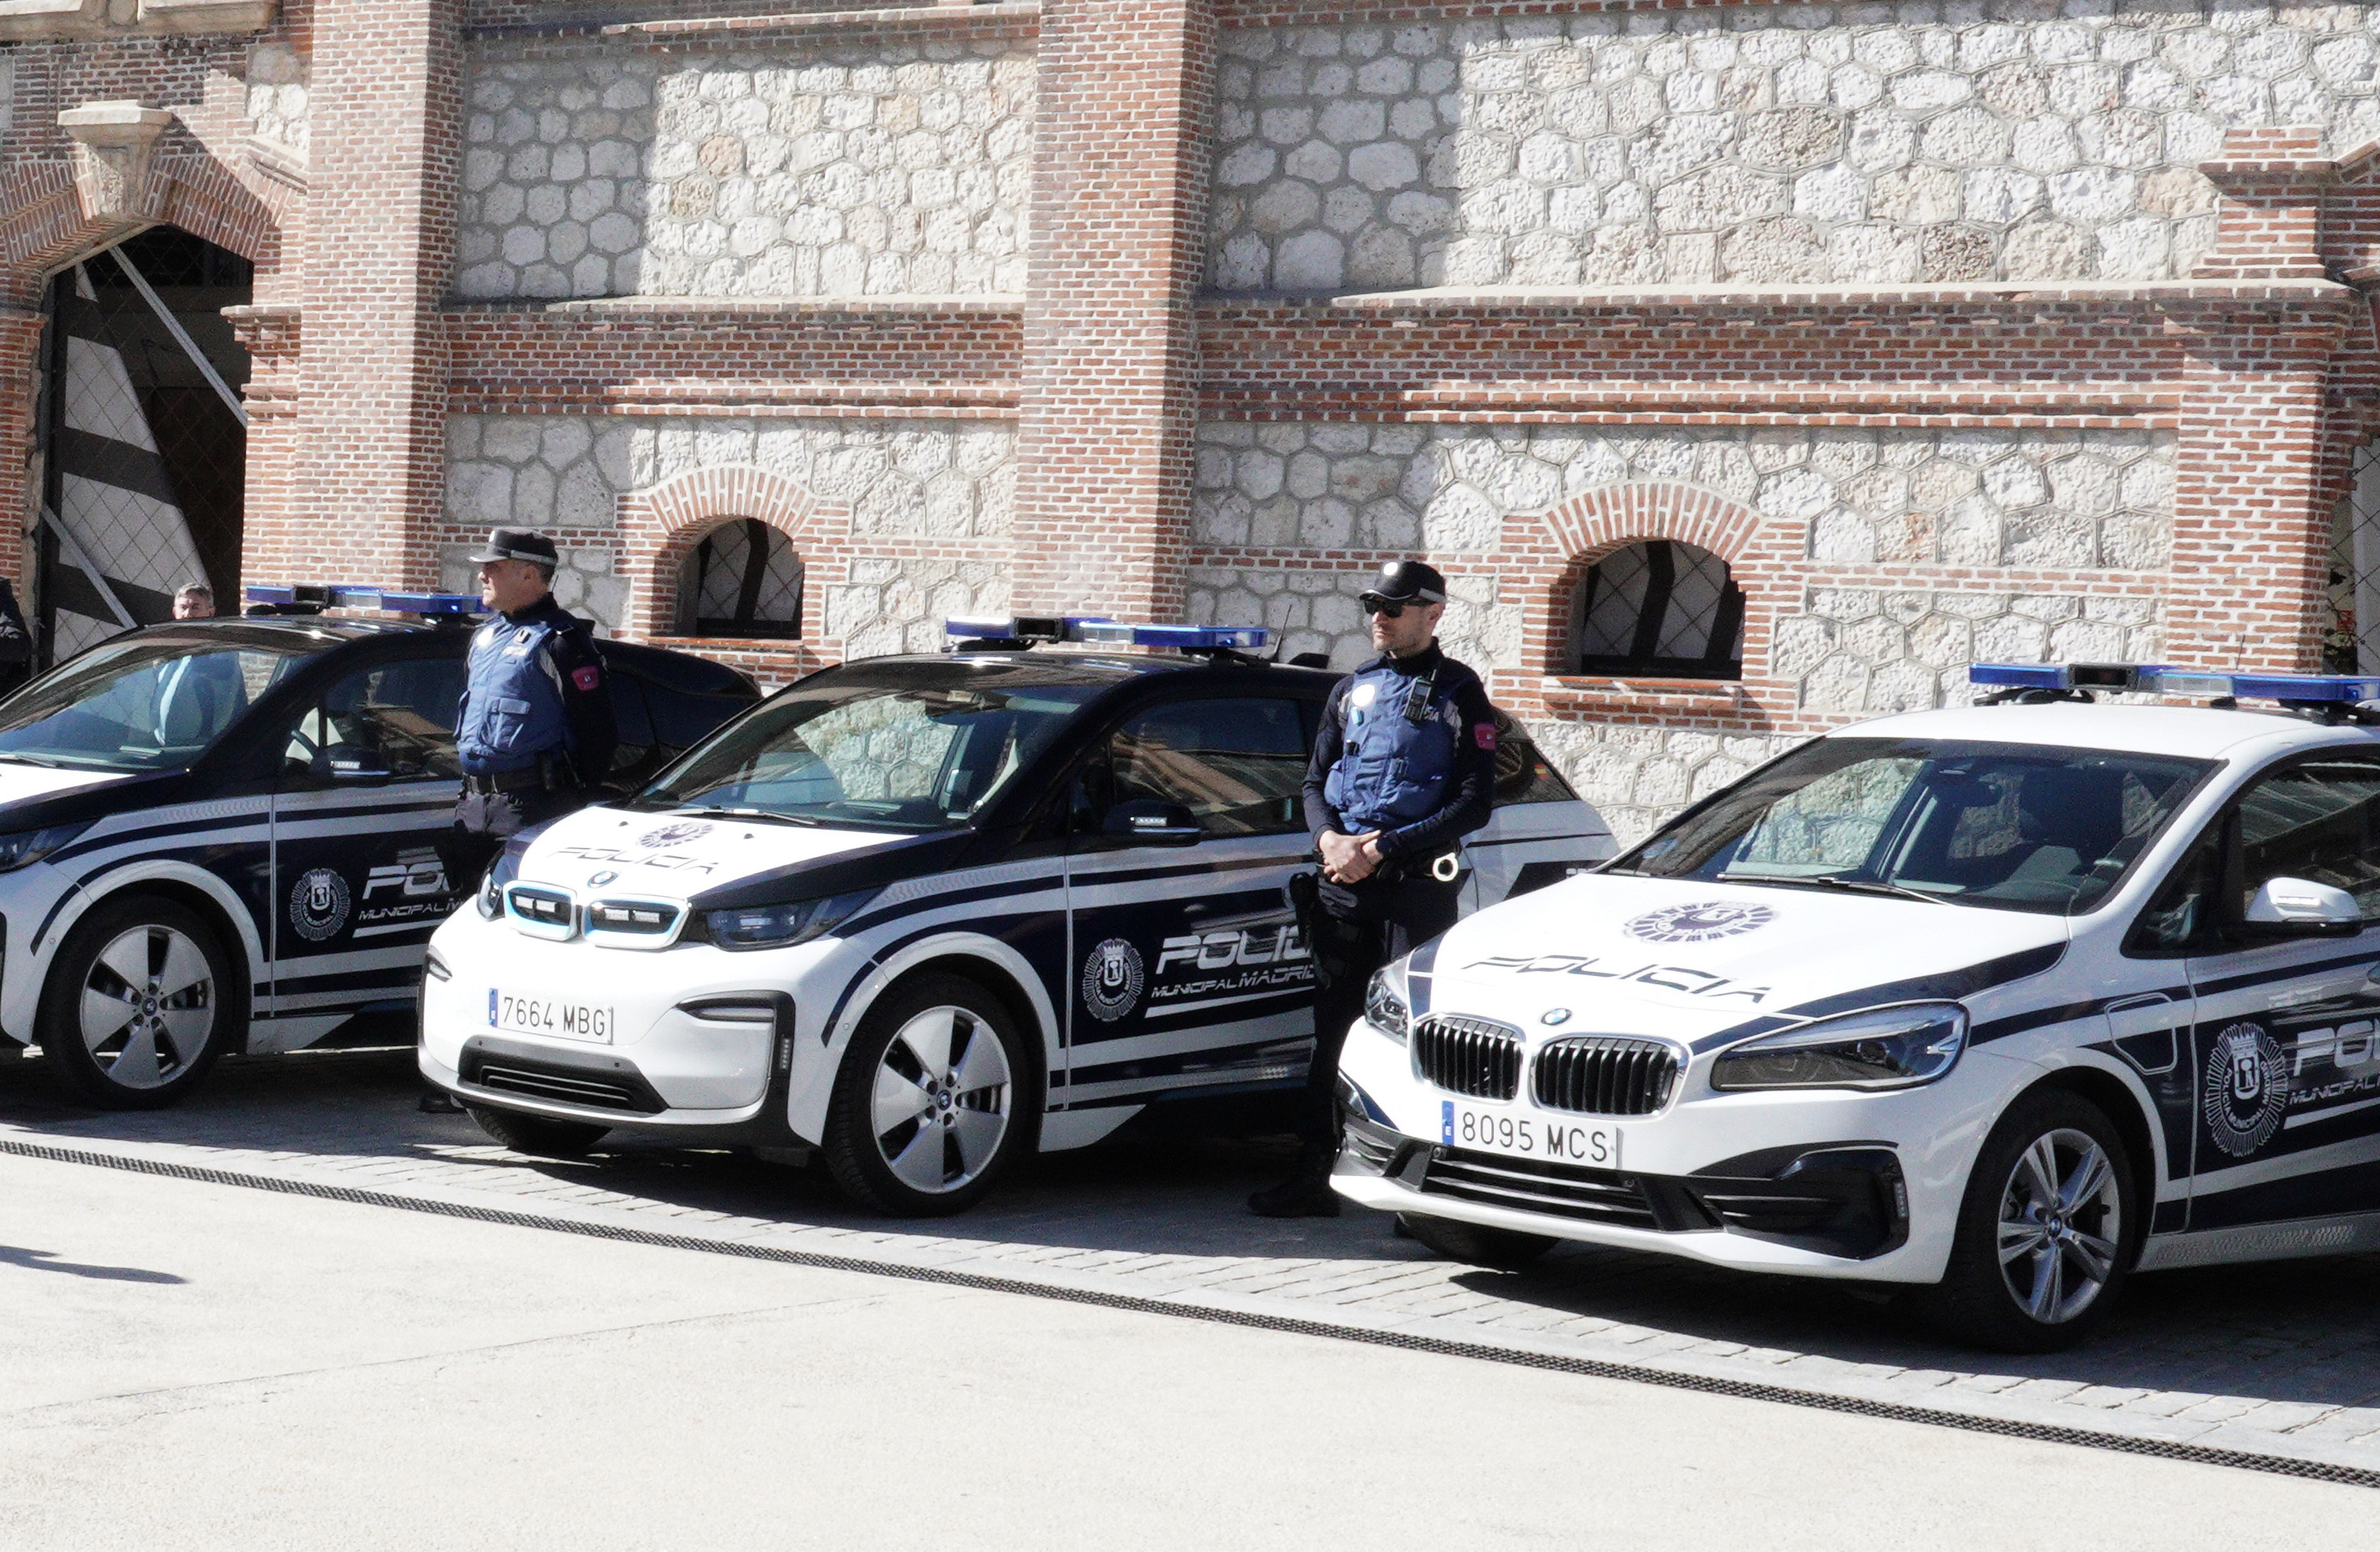 Nuevos automóviles de Policía Municipal.